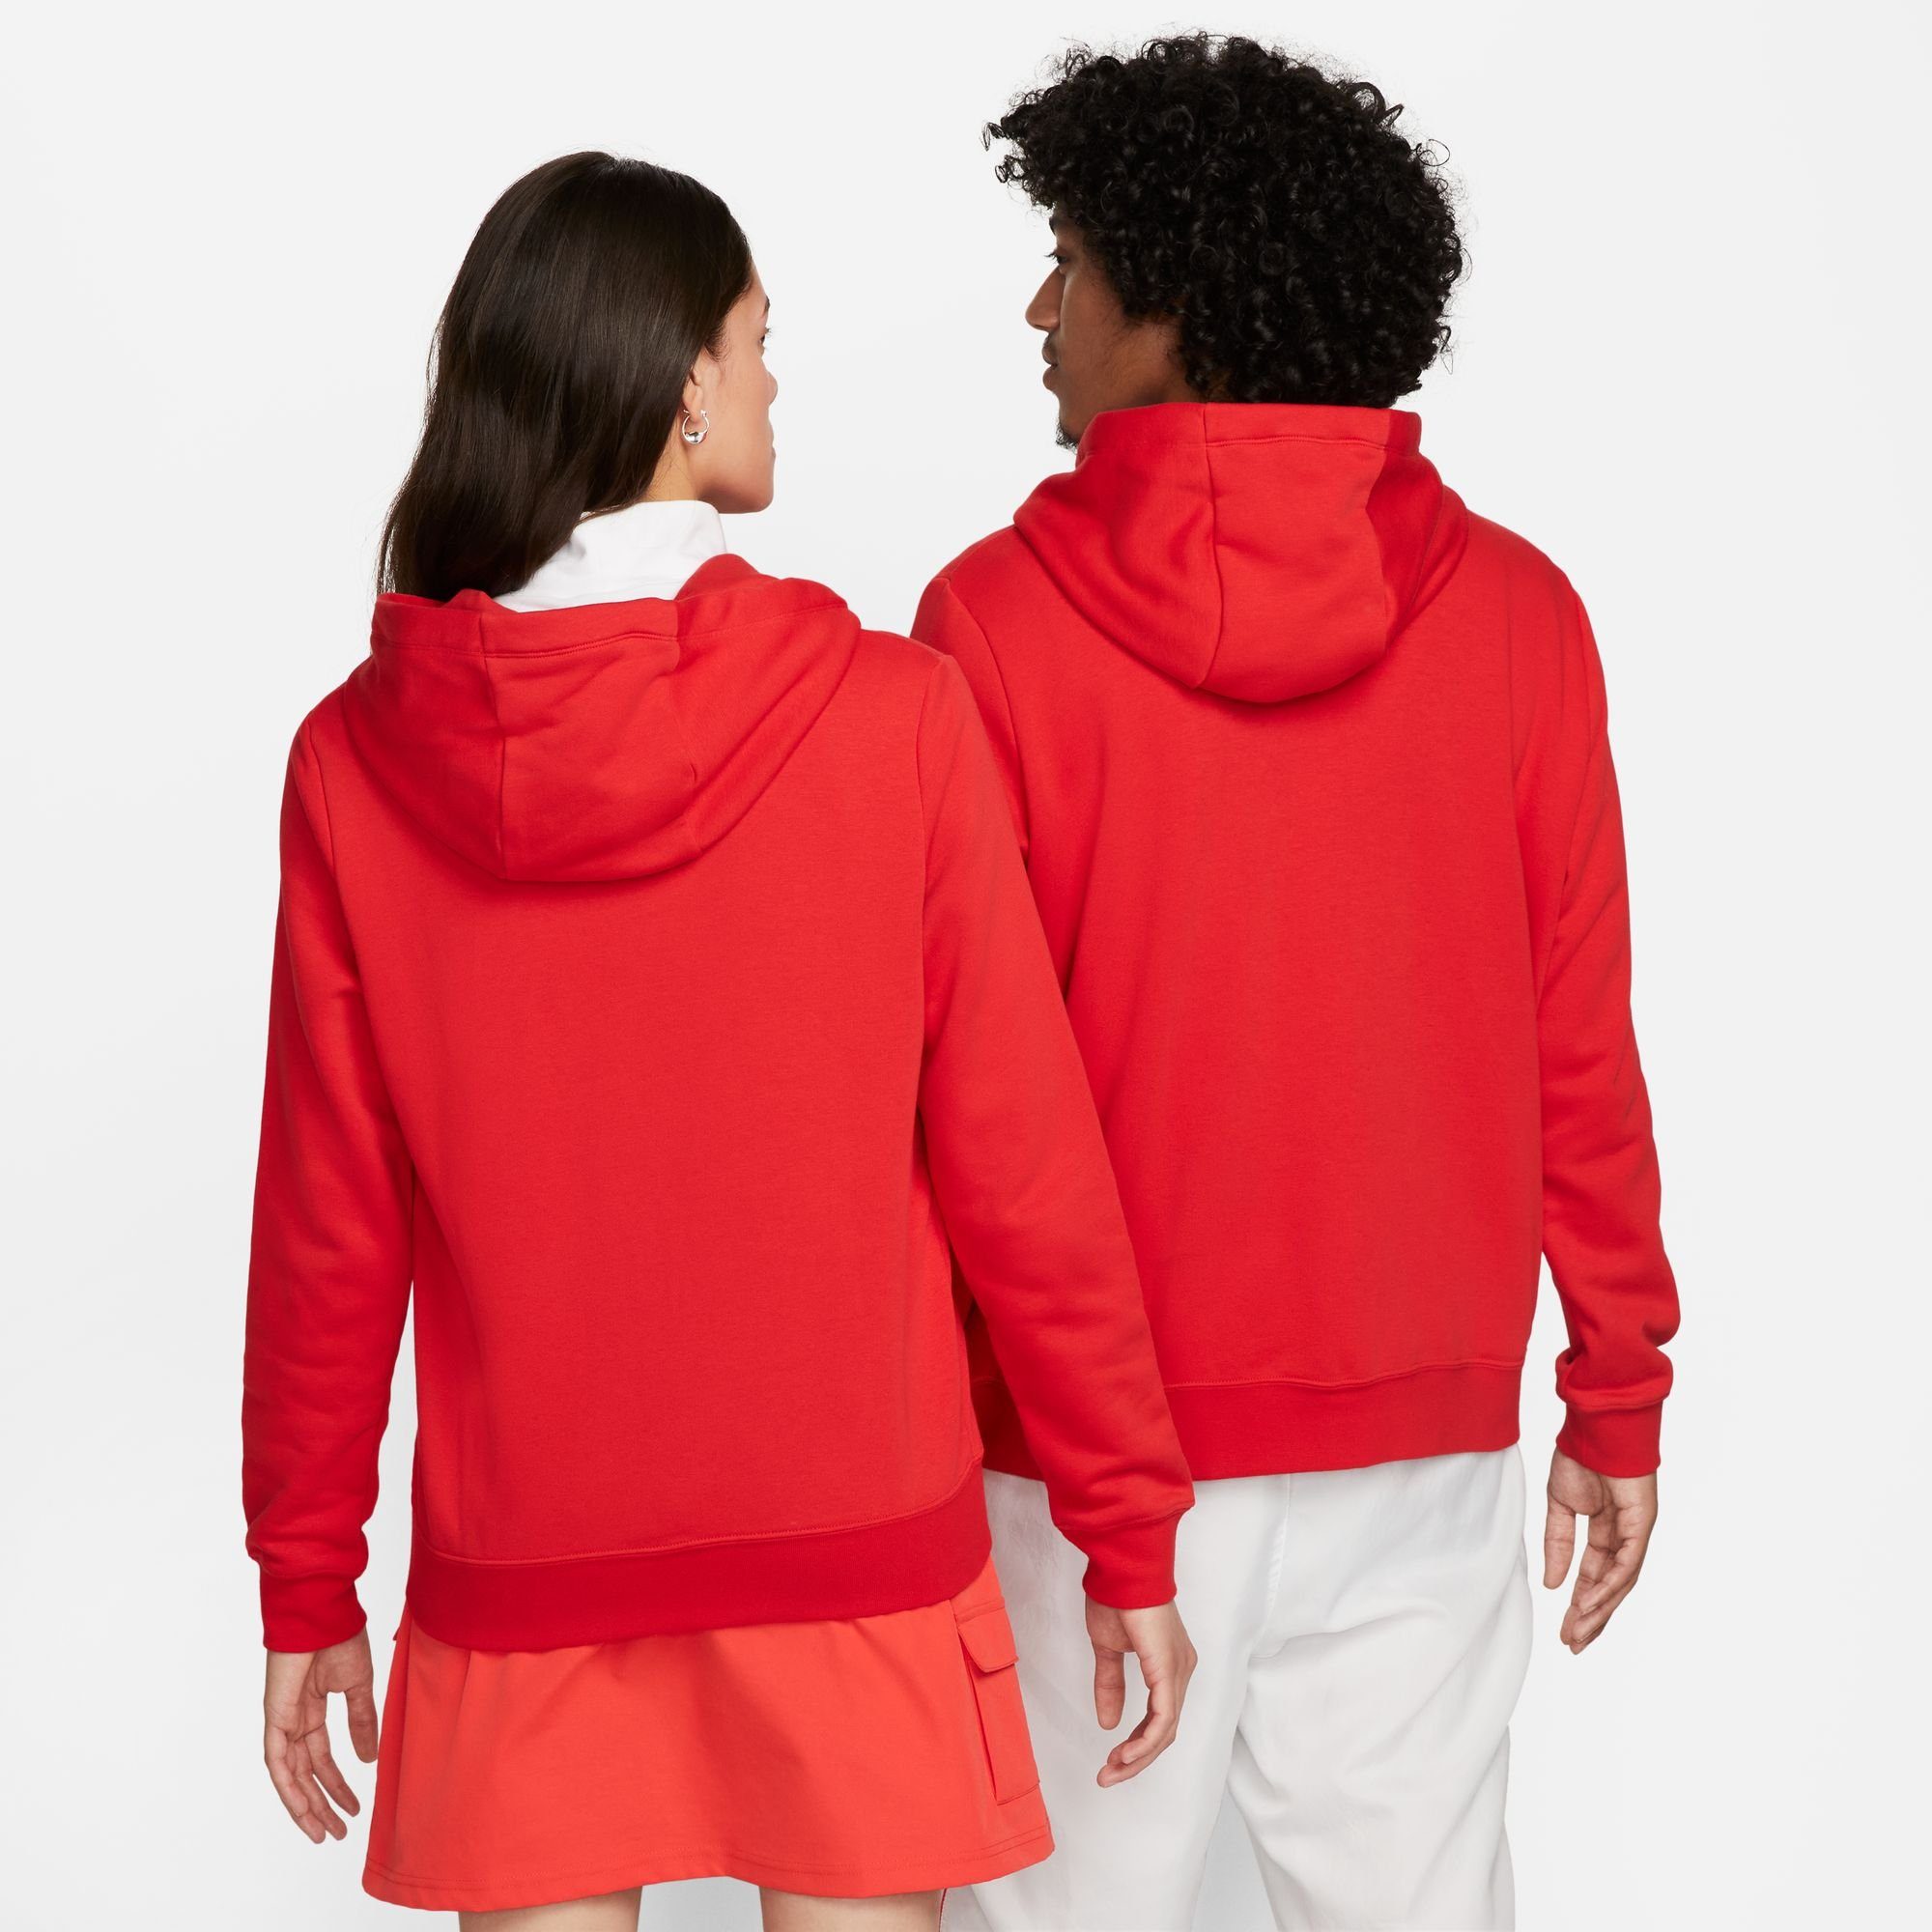 Kapuzensweatjacke Full-Zip RED/WHITE Fleece Women's Club Sportswear Nike Hoodie UNIVERSITY